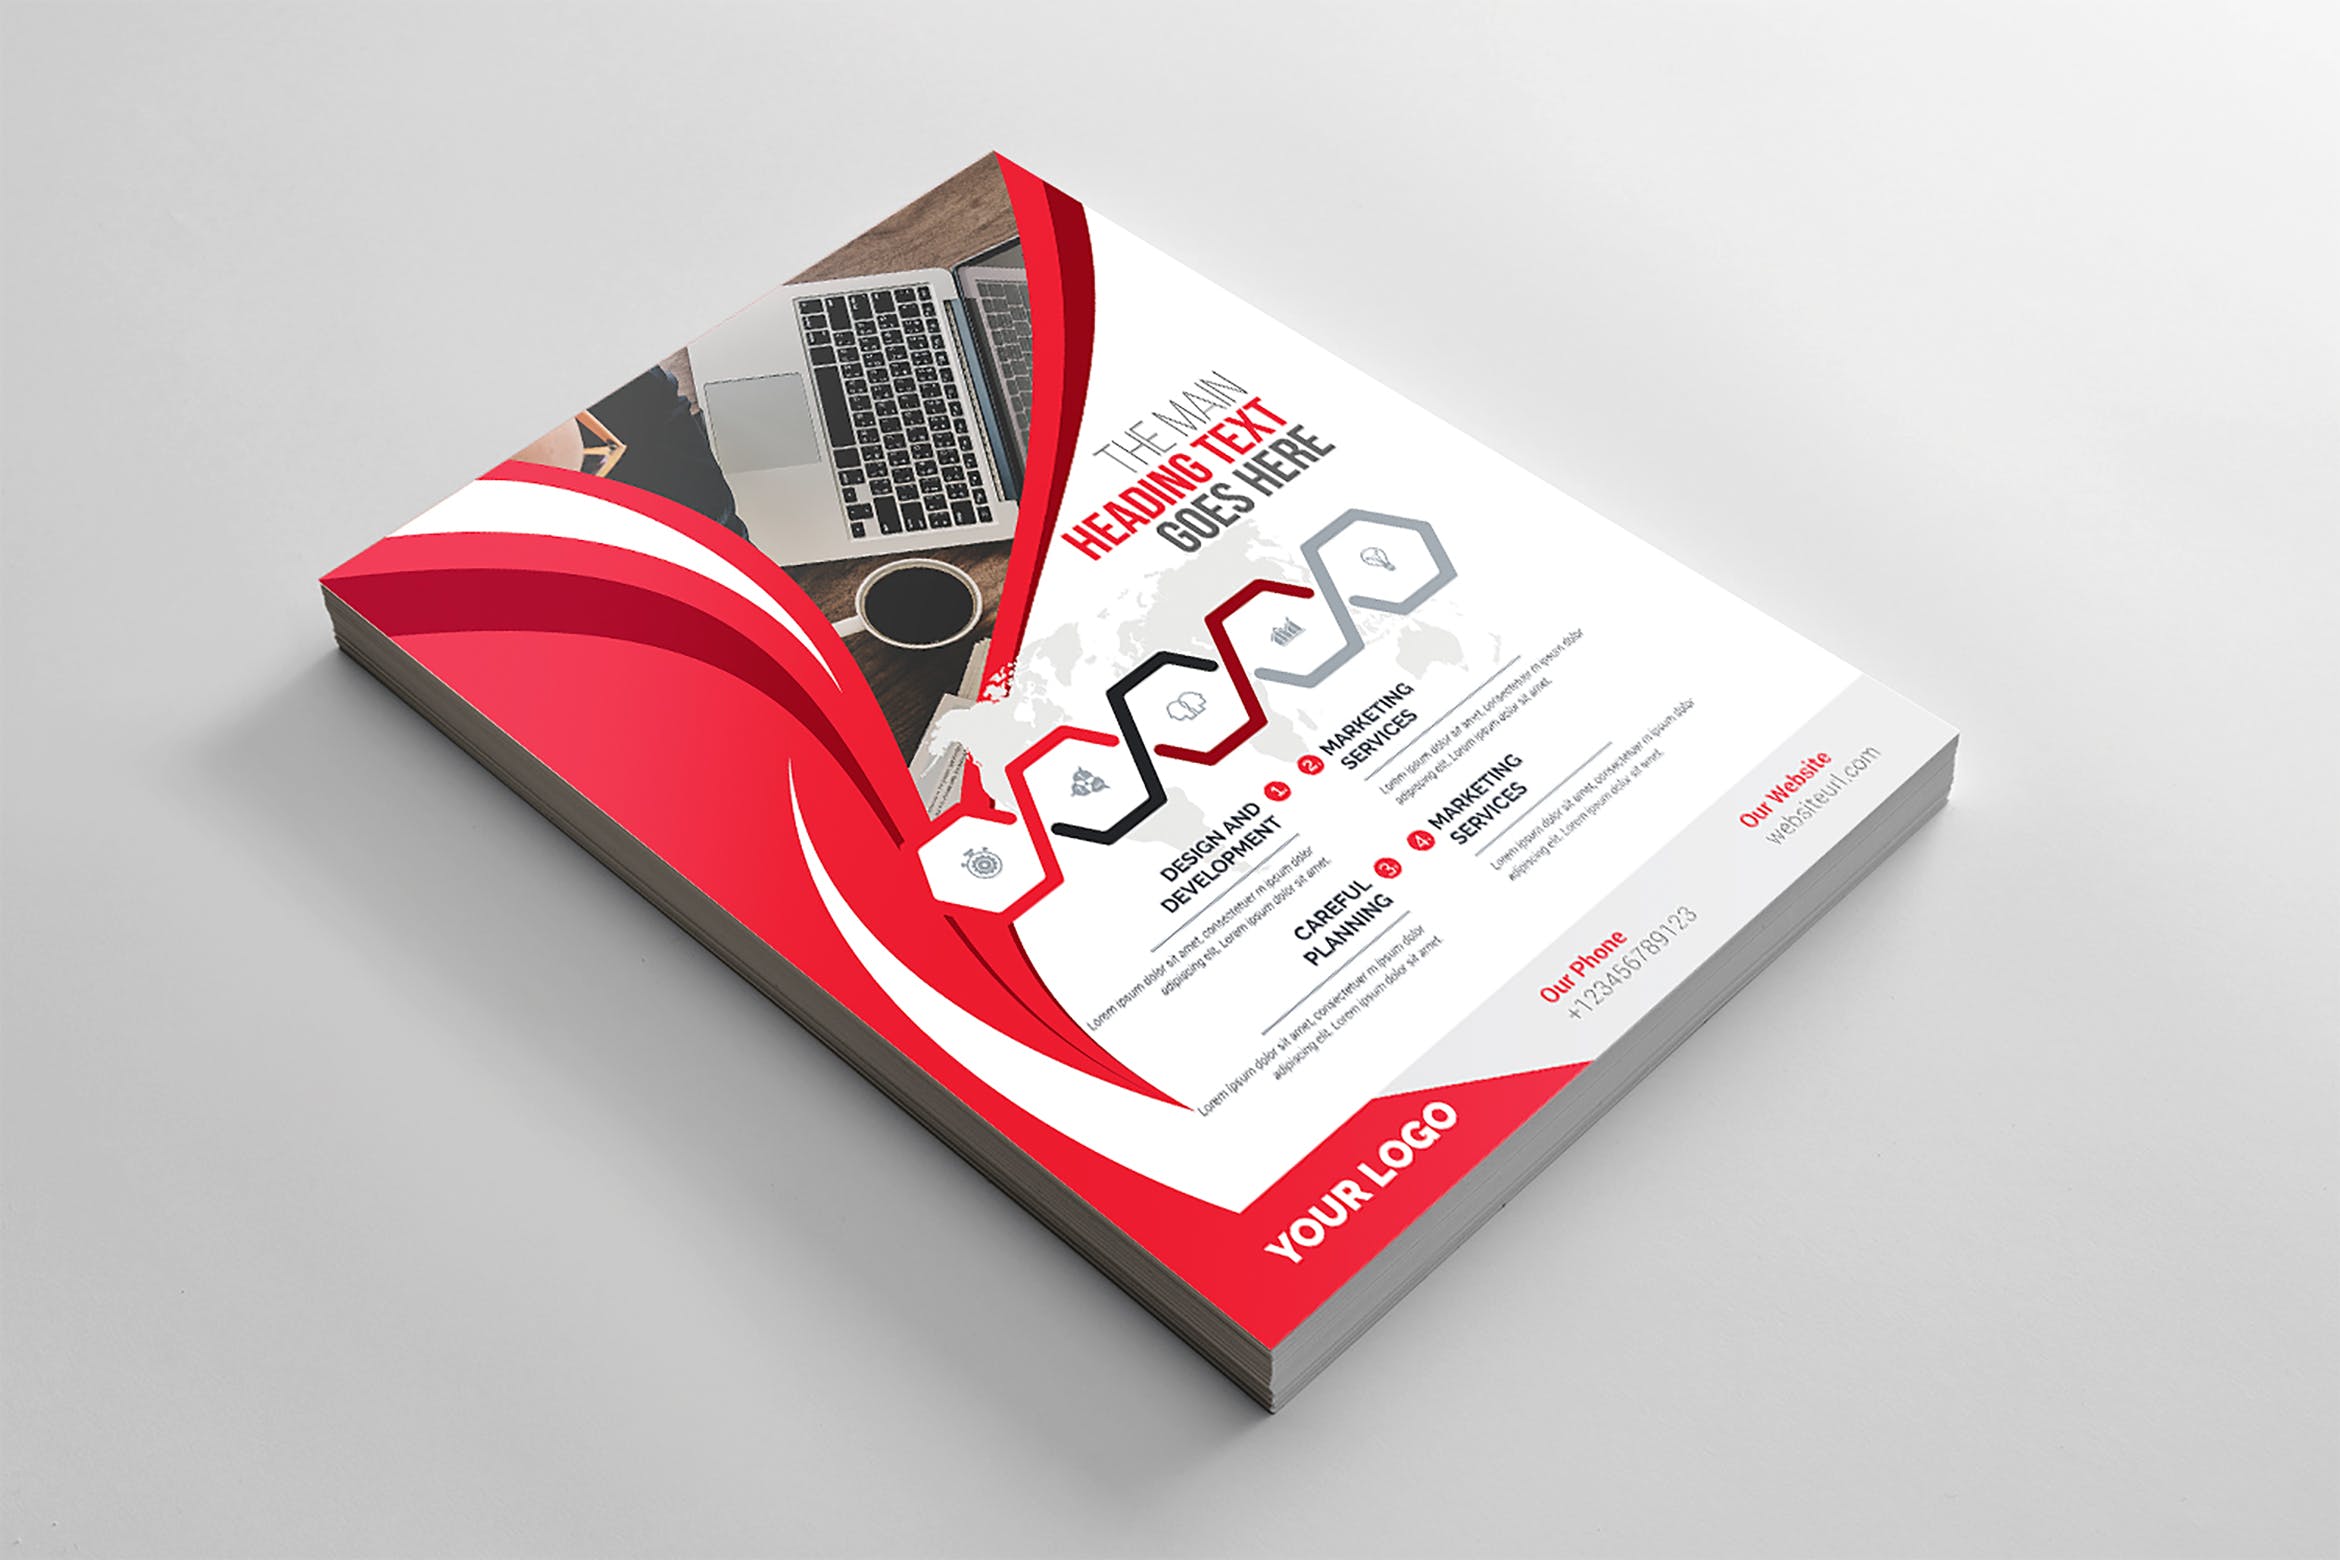 企业介绍&公司宣传商业传单设计模板 Corporate Flyer插图